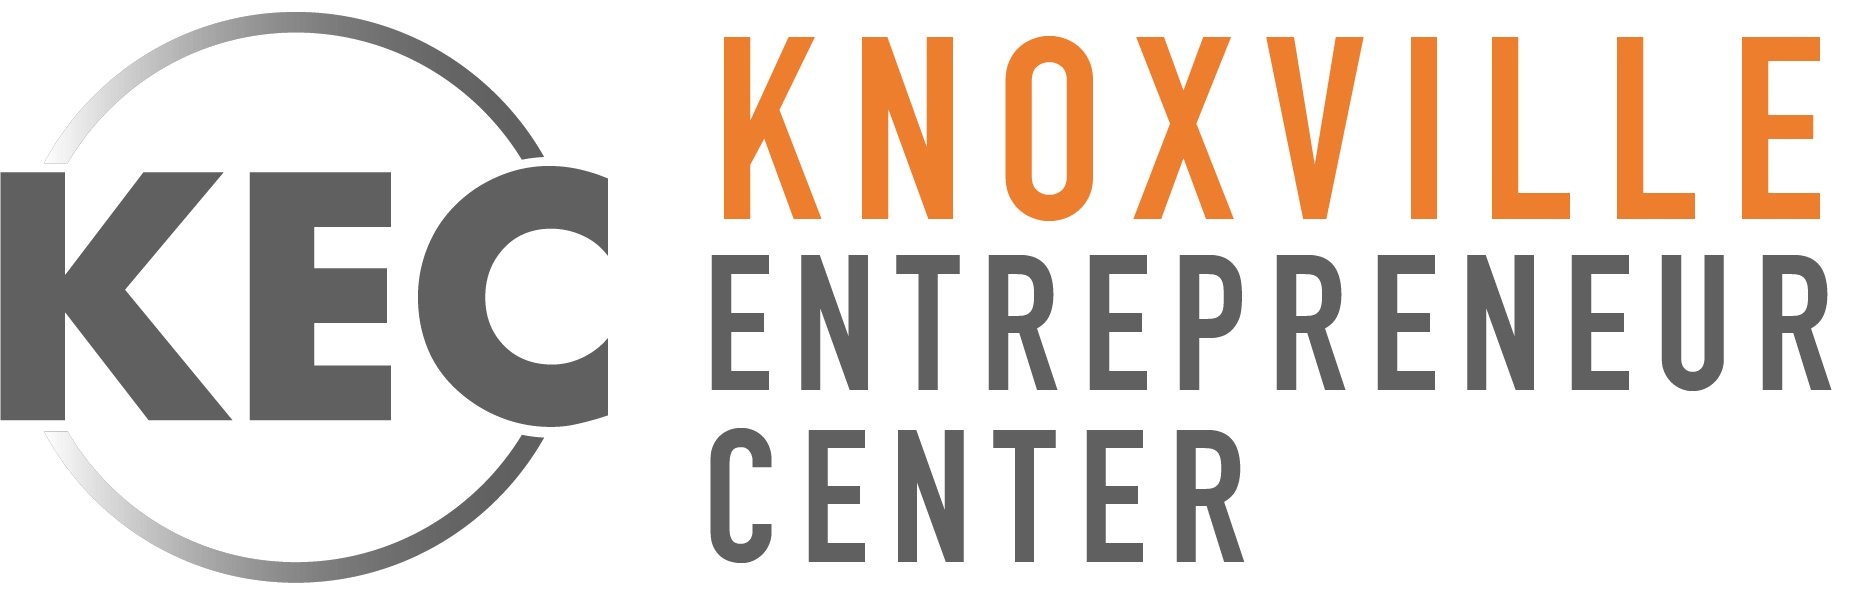 Knoxville Logo - Home - Knoxville Entrepreneur Center